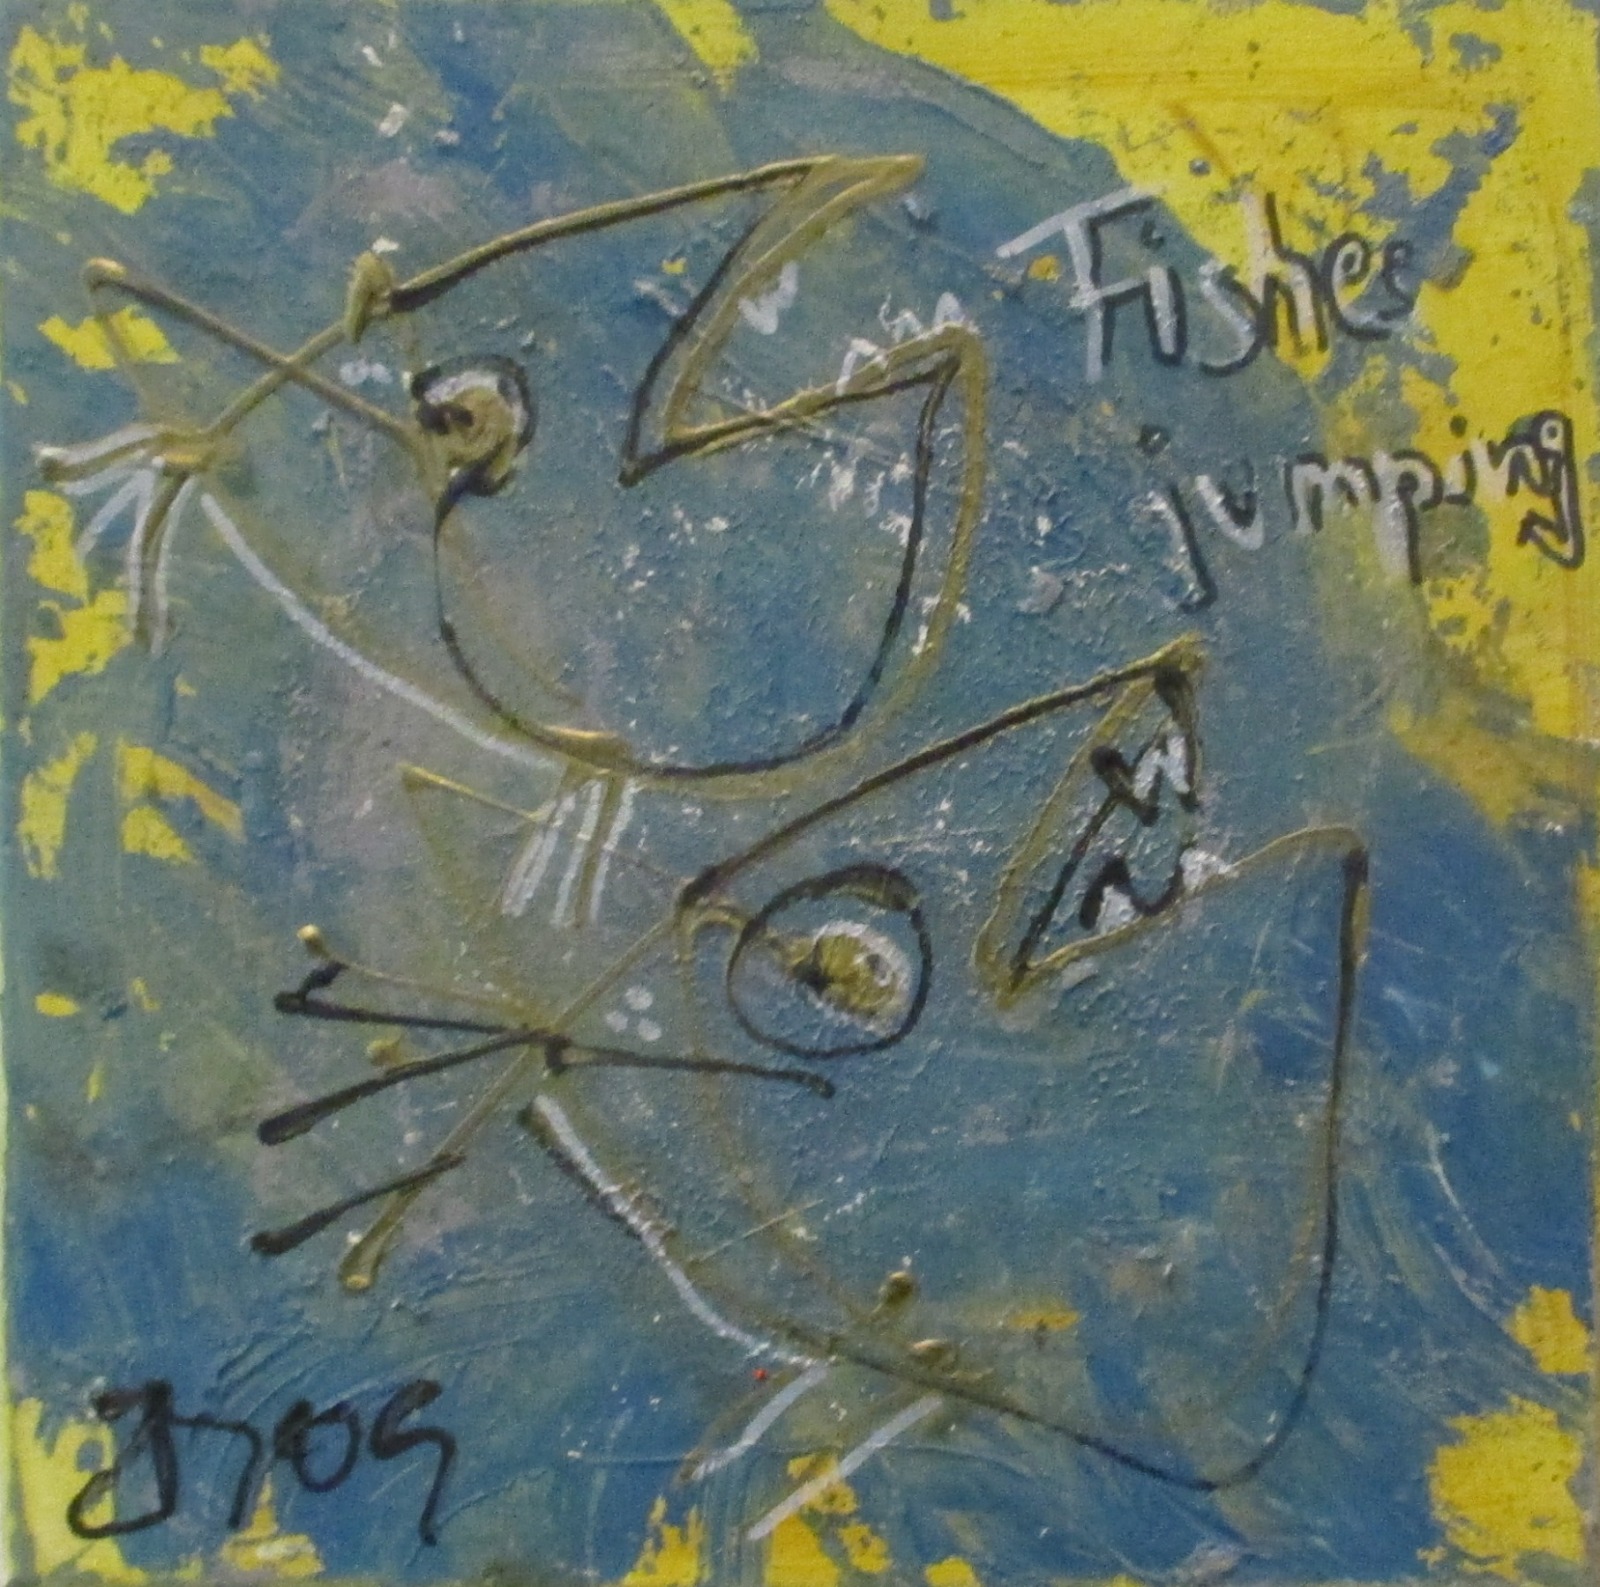 witzige blaue Fische 30x30cm Öl/ Leinwand Zeichnung